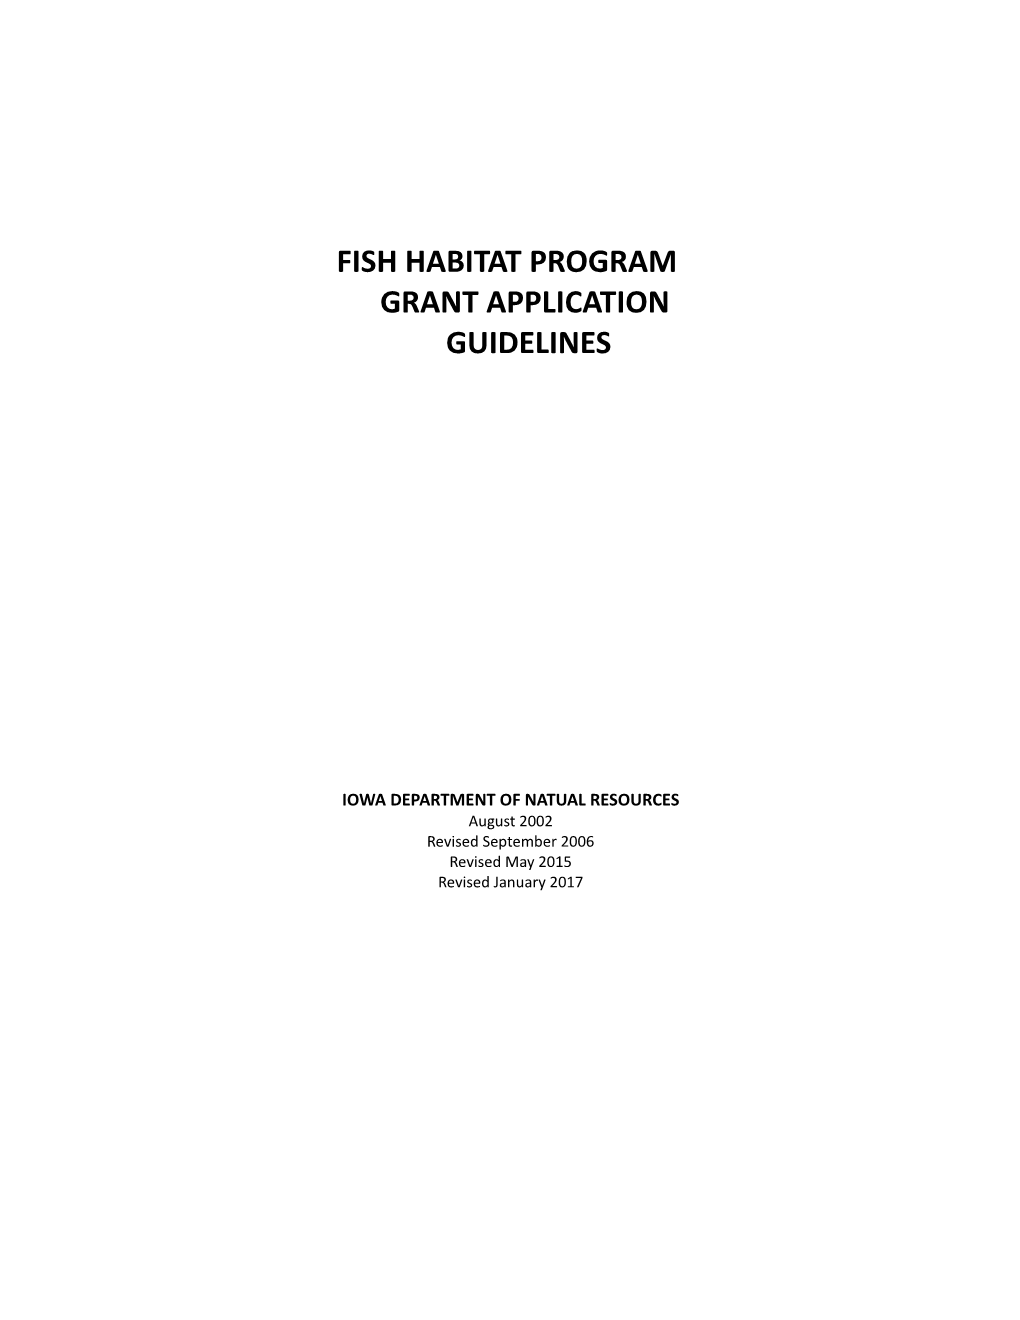 Fish Habitat Program